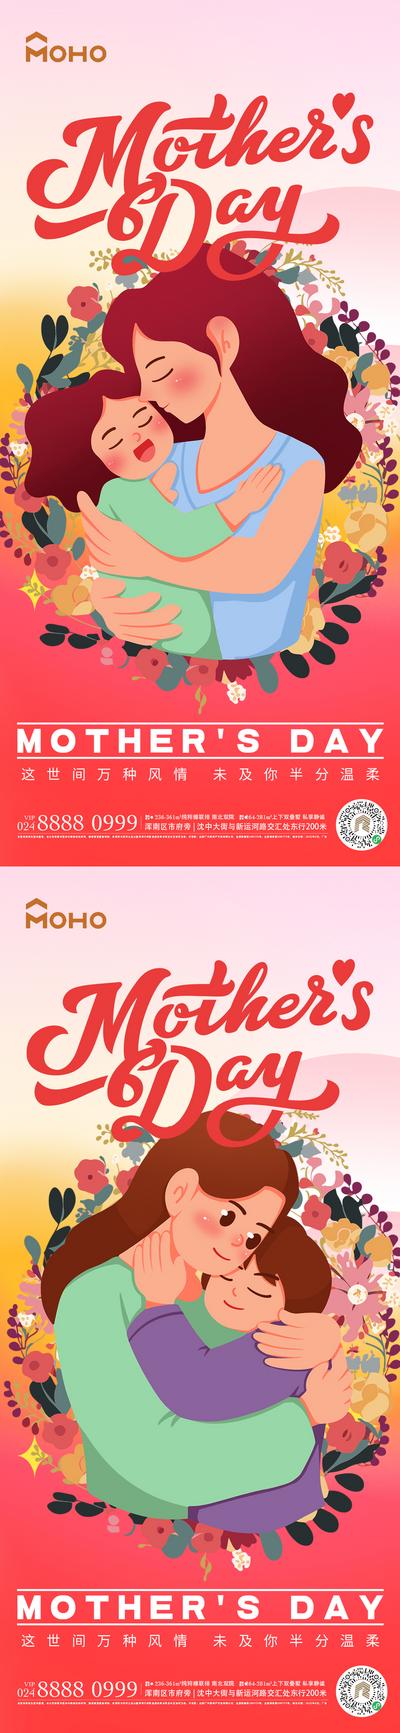 南门网 广告 海报 节日 母亲节 母亲 母女 母子 爱 母爱 感恩 拥抱 呵护 陪伴 鲜花 送花